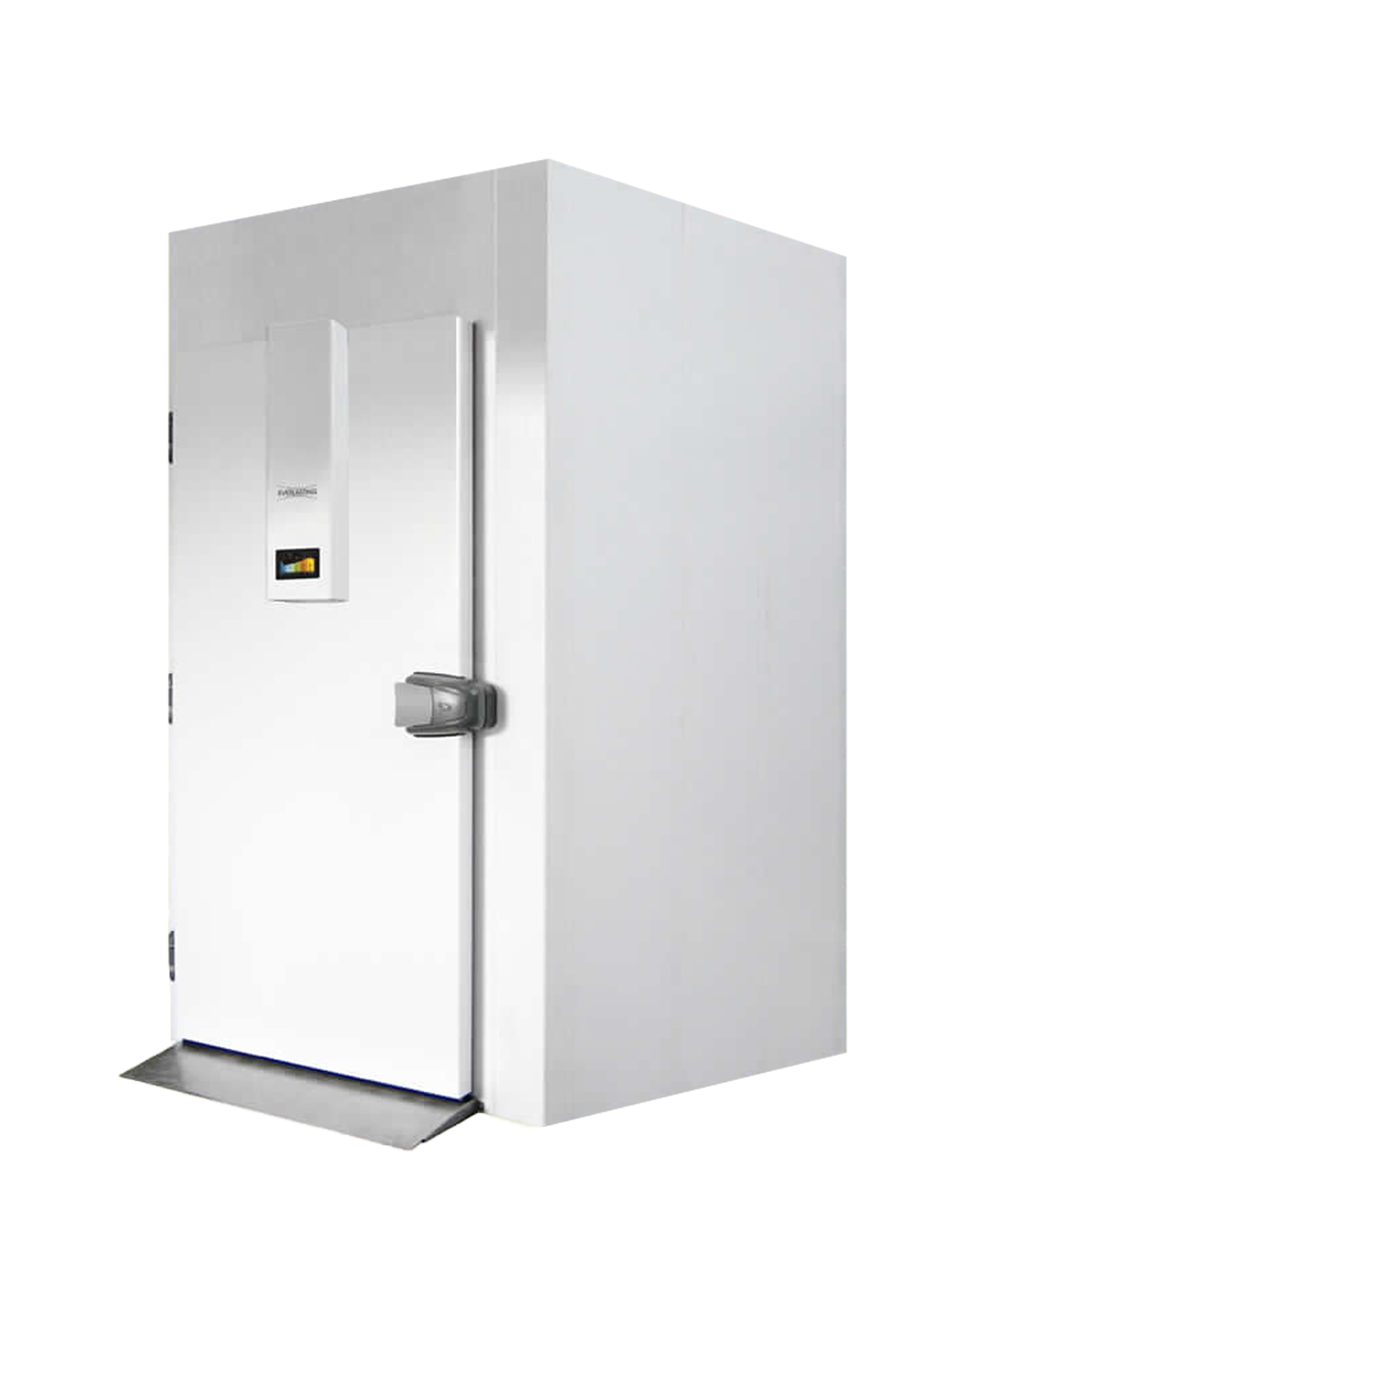 Assistenza e vendita refrigeratori industriali | Frigorservice Due